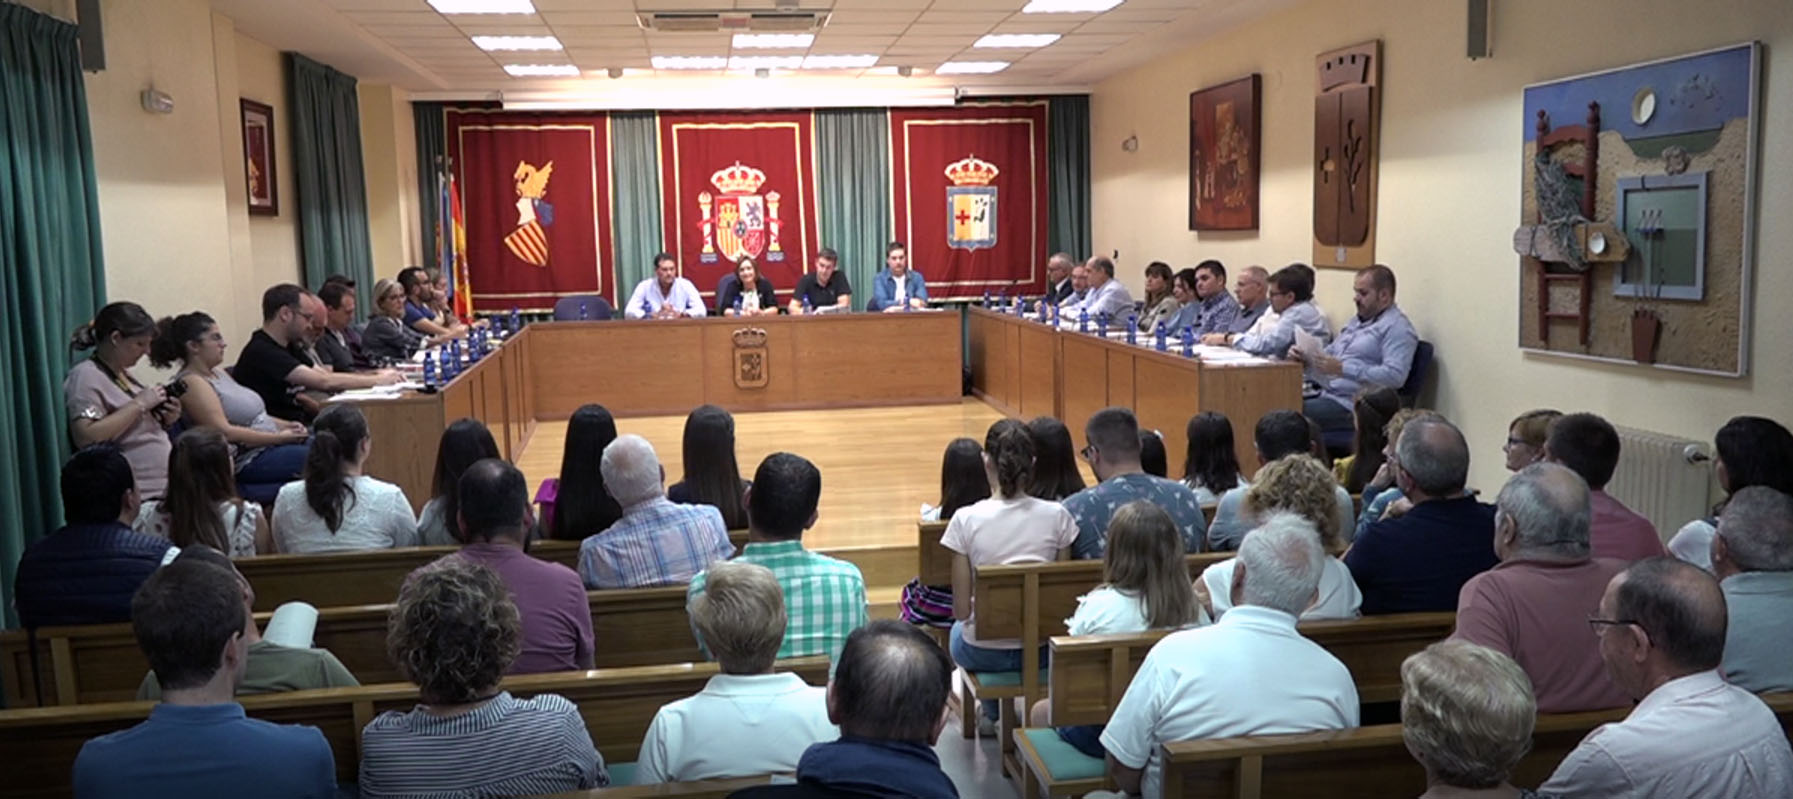 Benicarló, el govern municipal presentarà una moció al ple per demanar la millora del servei ferroviari